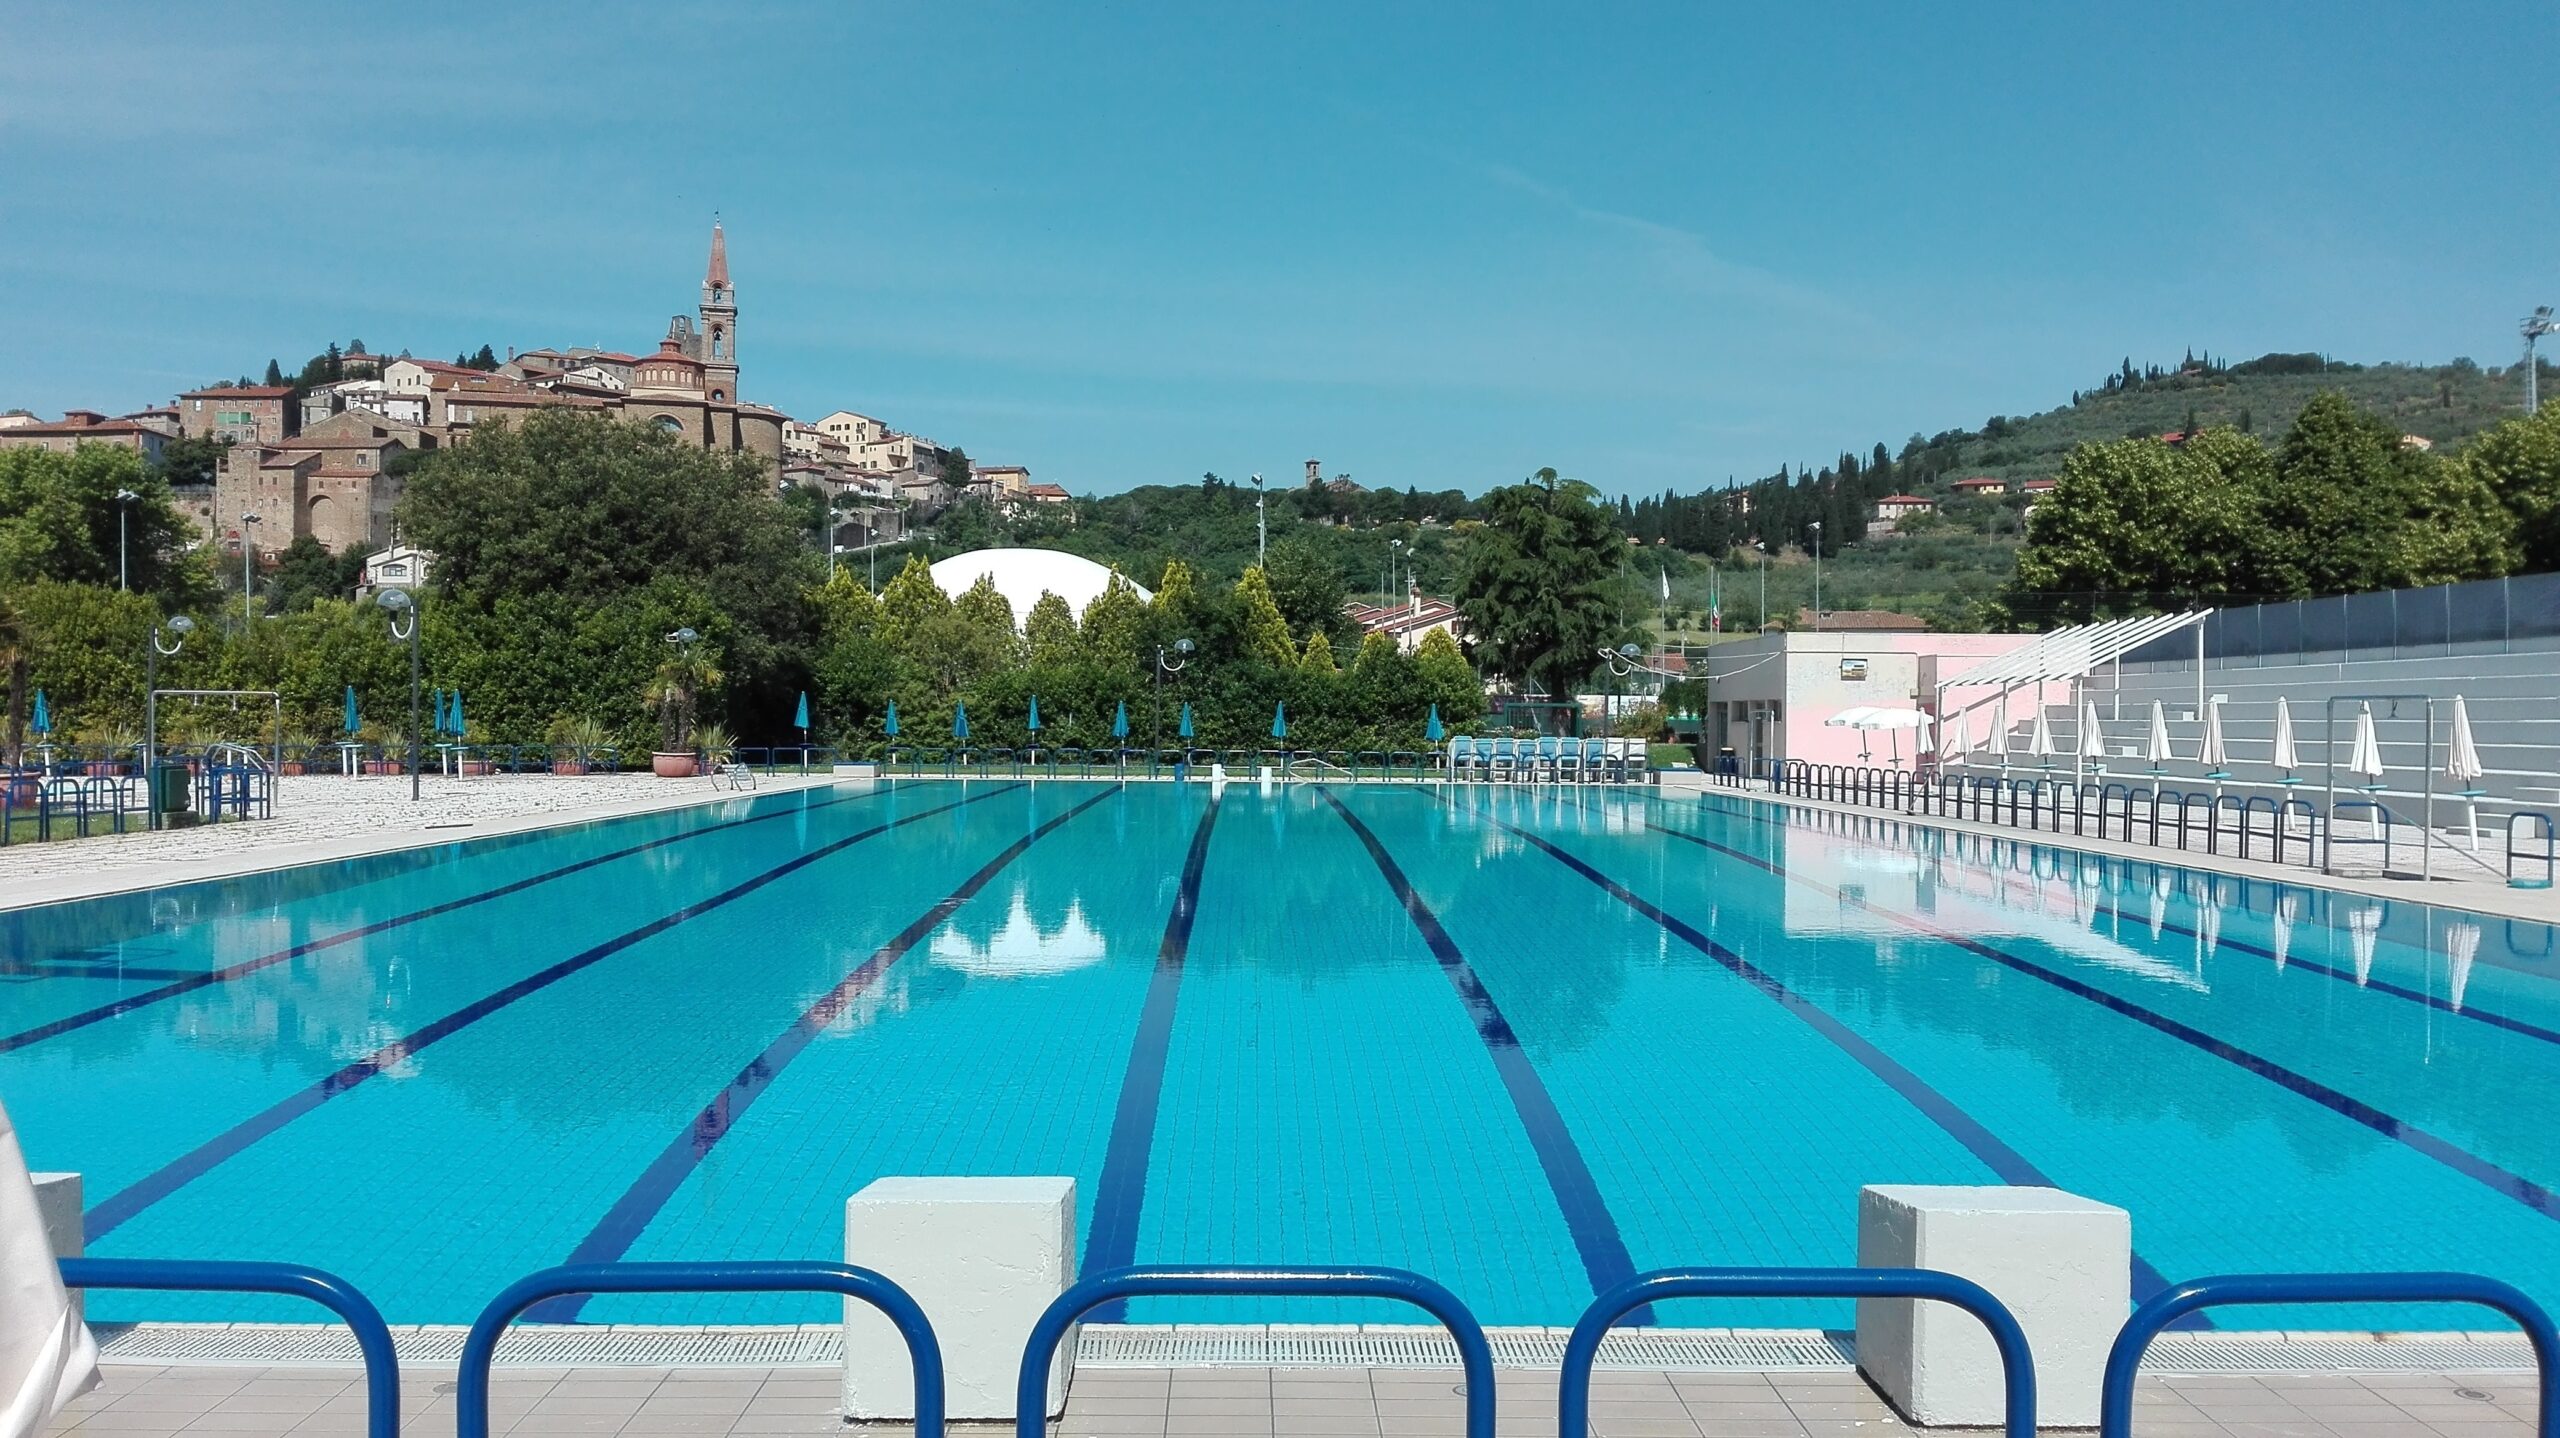 Riprende l’attività della piscina comunale di Castiglion Fiorentino